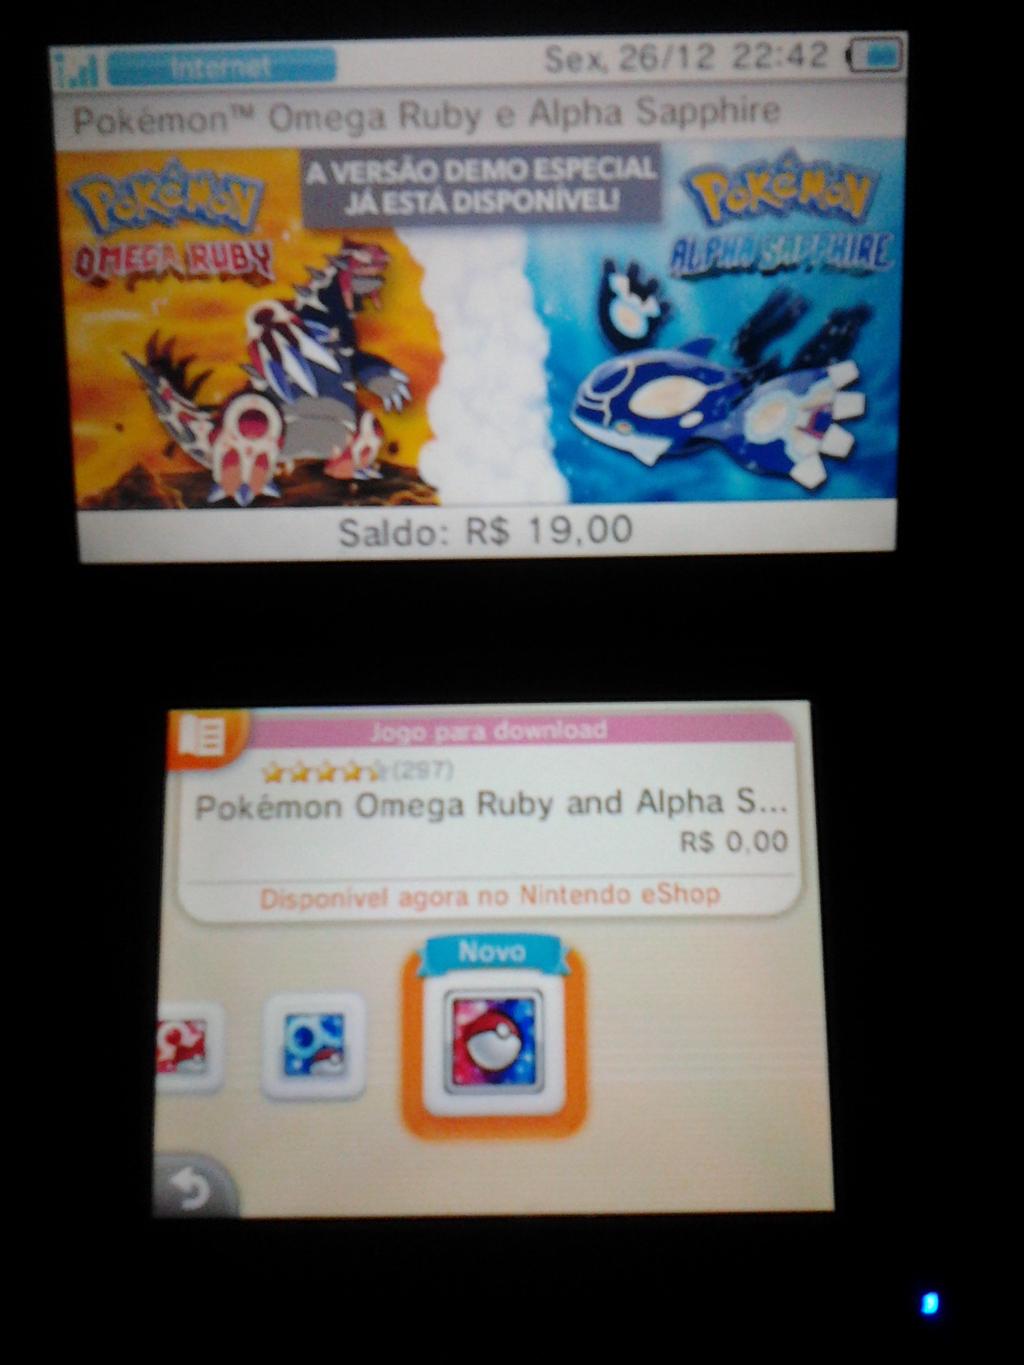 Como fazer download de Pokémon Omega Ruby e Alpha Sapphire no 3DS